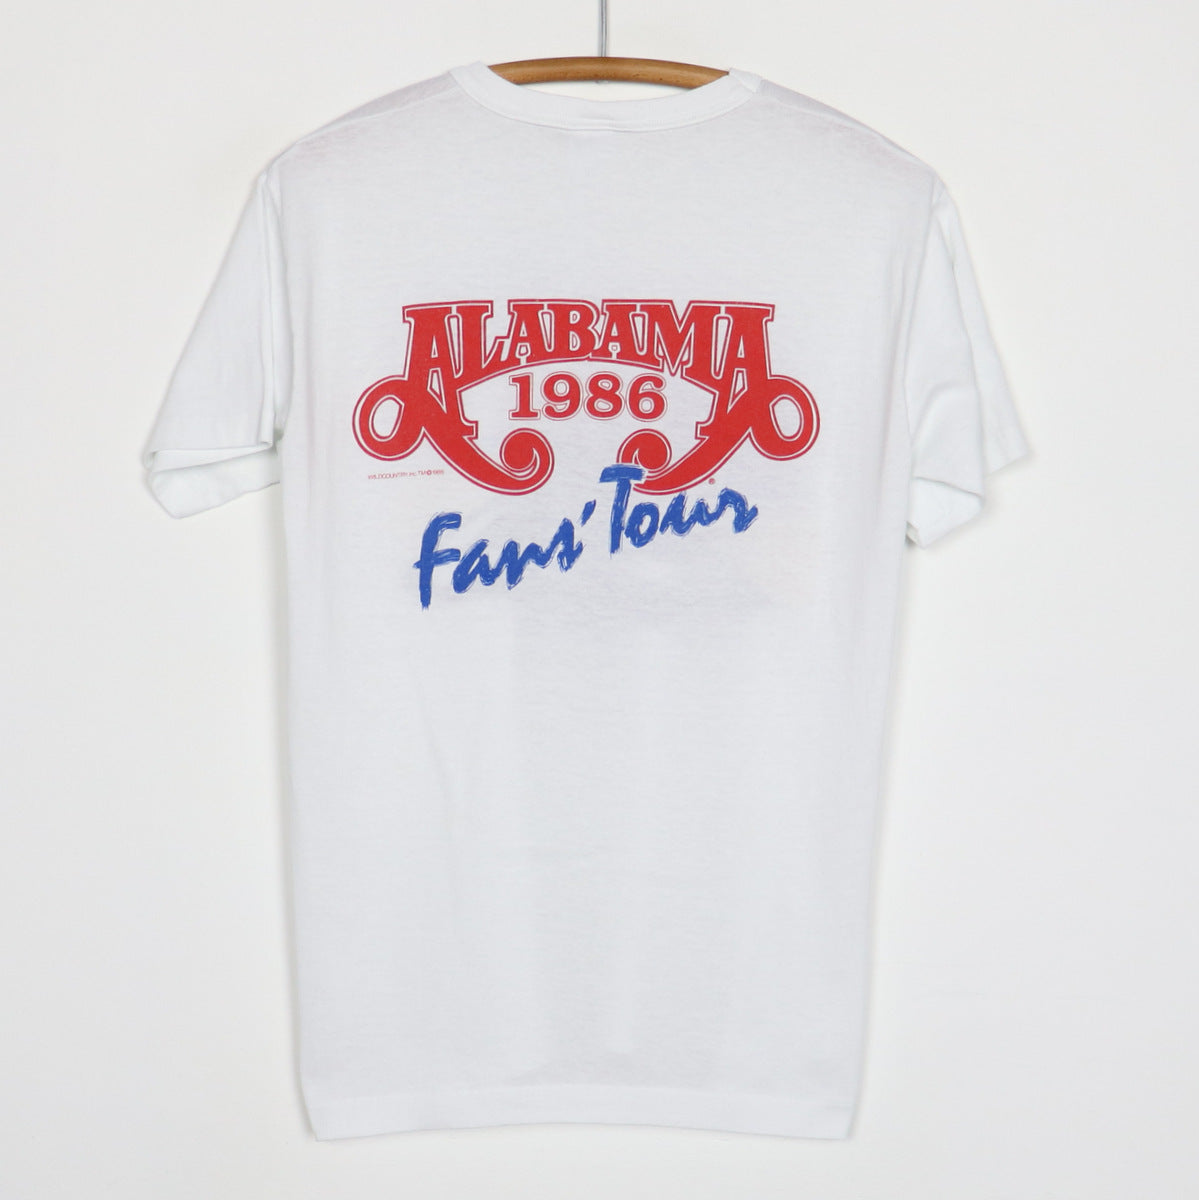 1986 Alabama Fans Tour Shirt